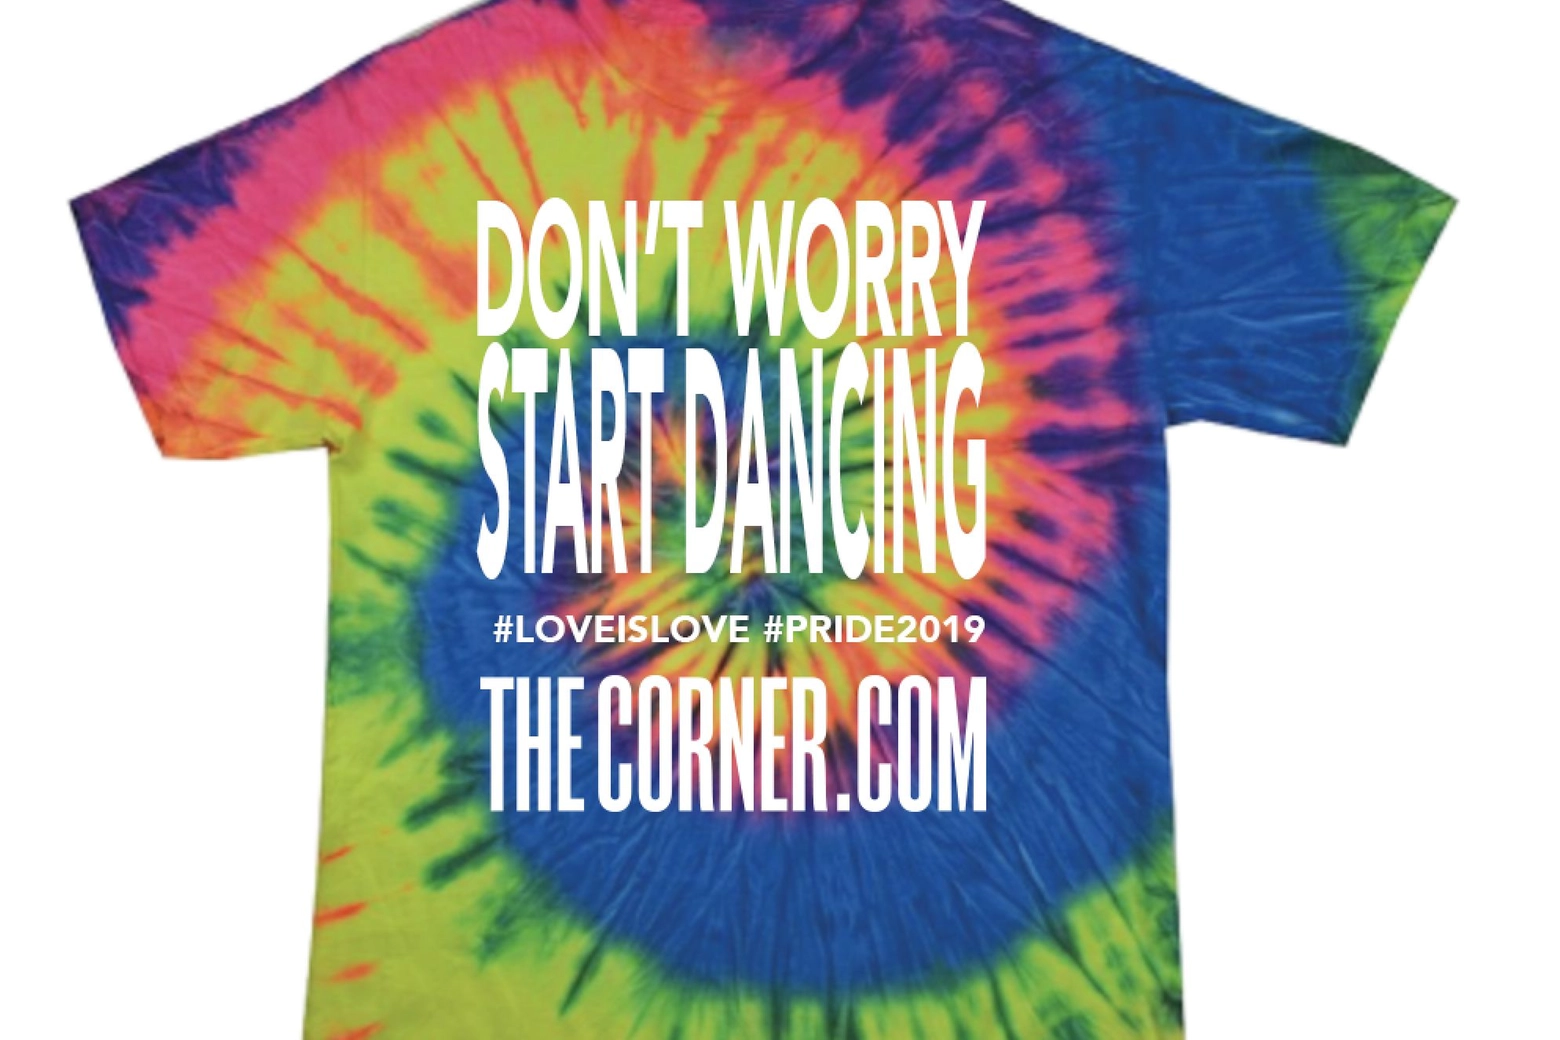 Tshirt The Corner.com